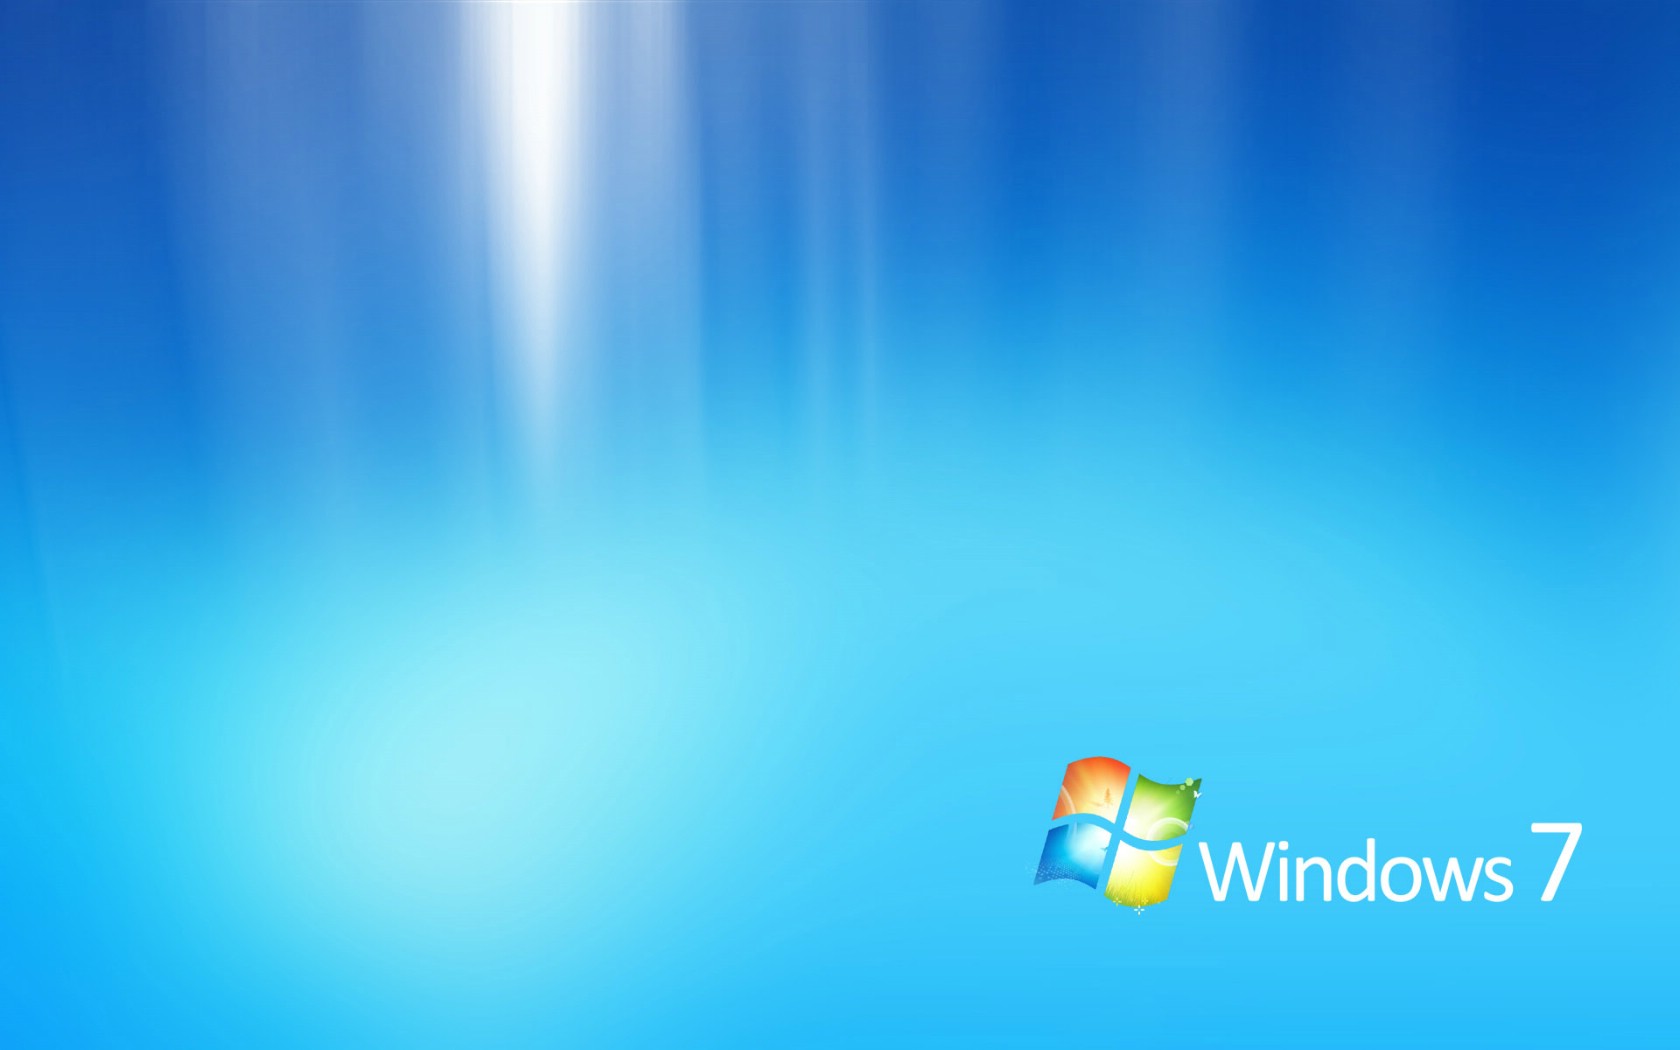 壁纸1680x1050Windows7 5 3壁纸 Windows7壁纸 Windows7图片 Windows7素材 系统壁纸 系统图库 系统图片素材桌面壁纸